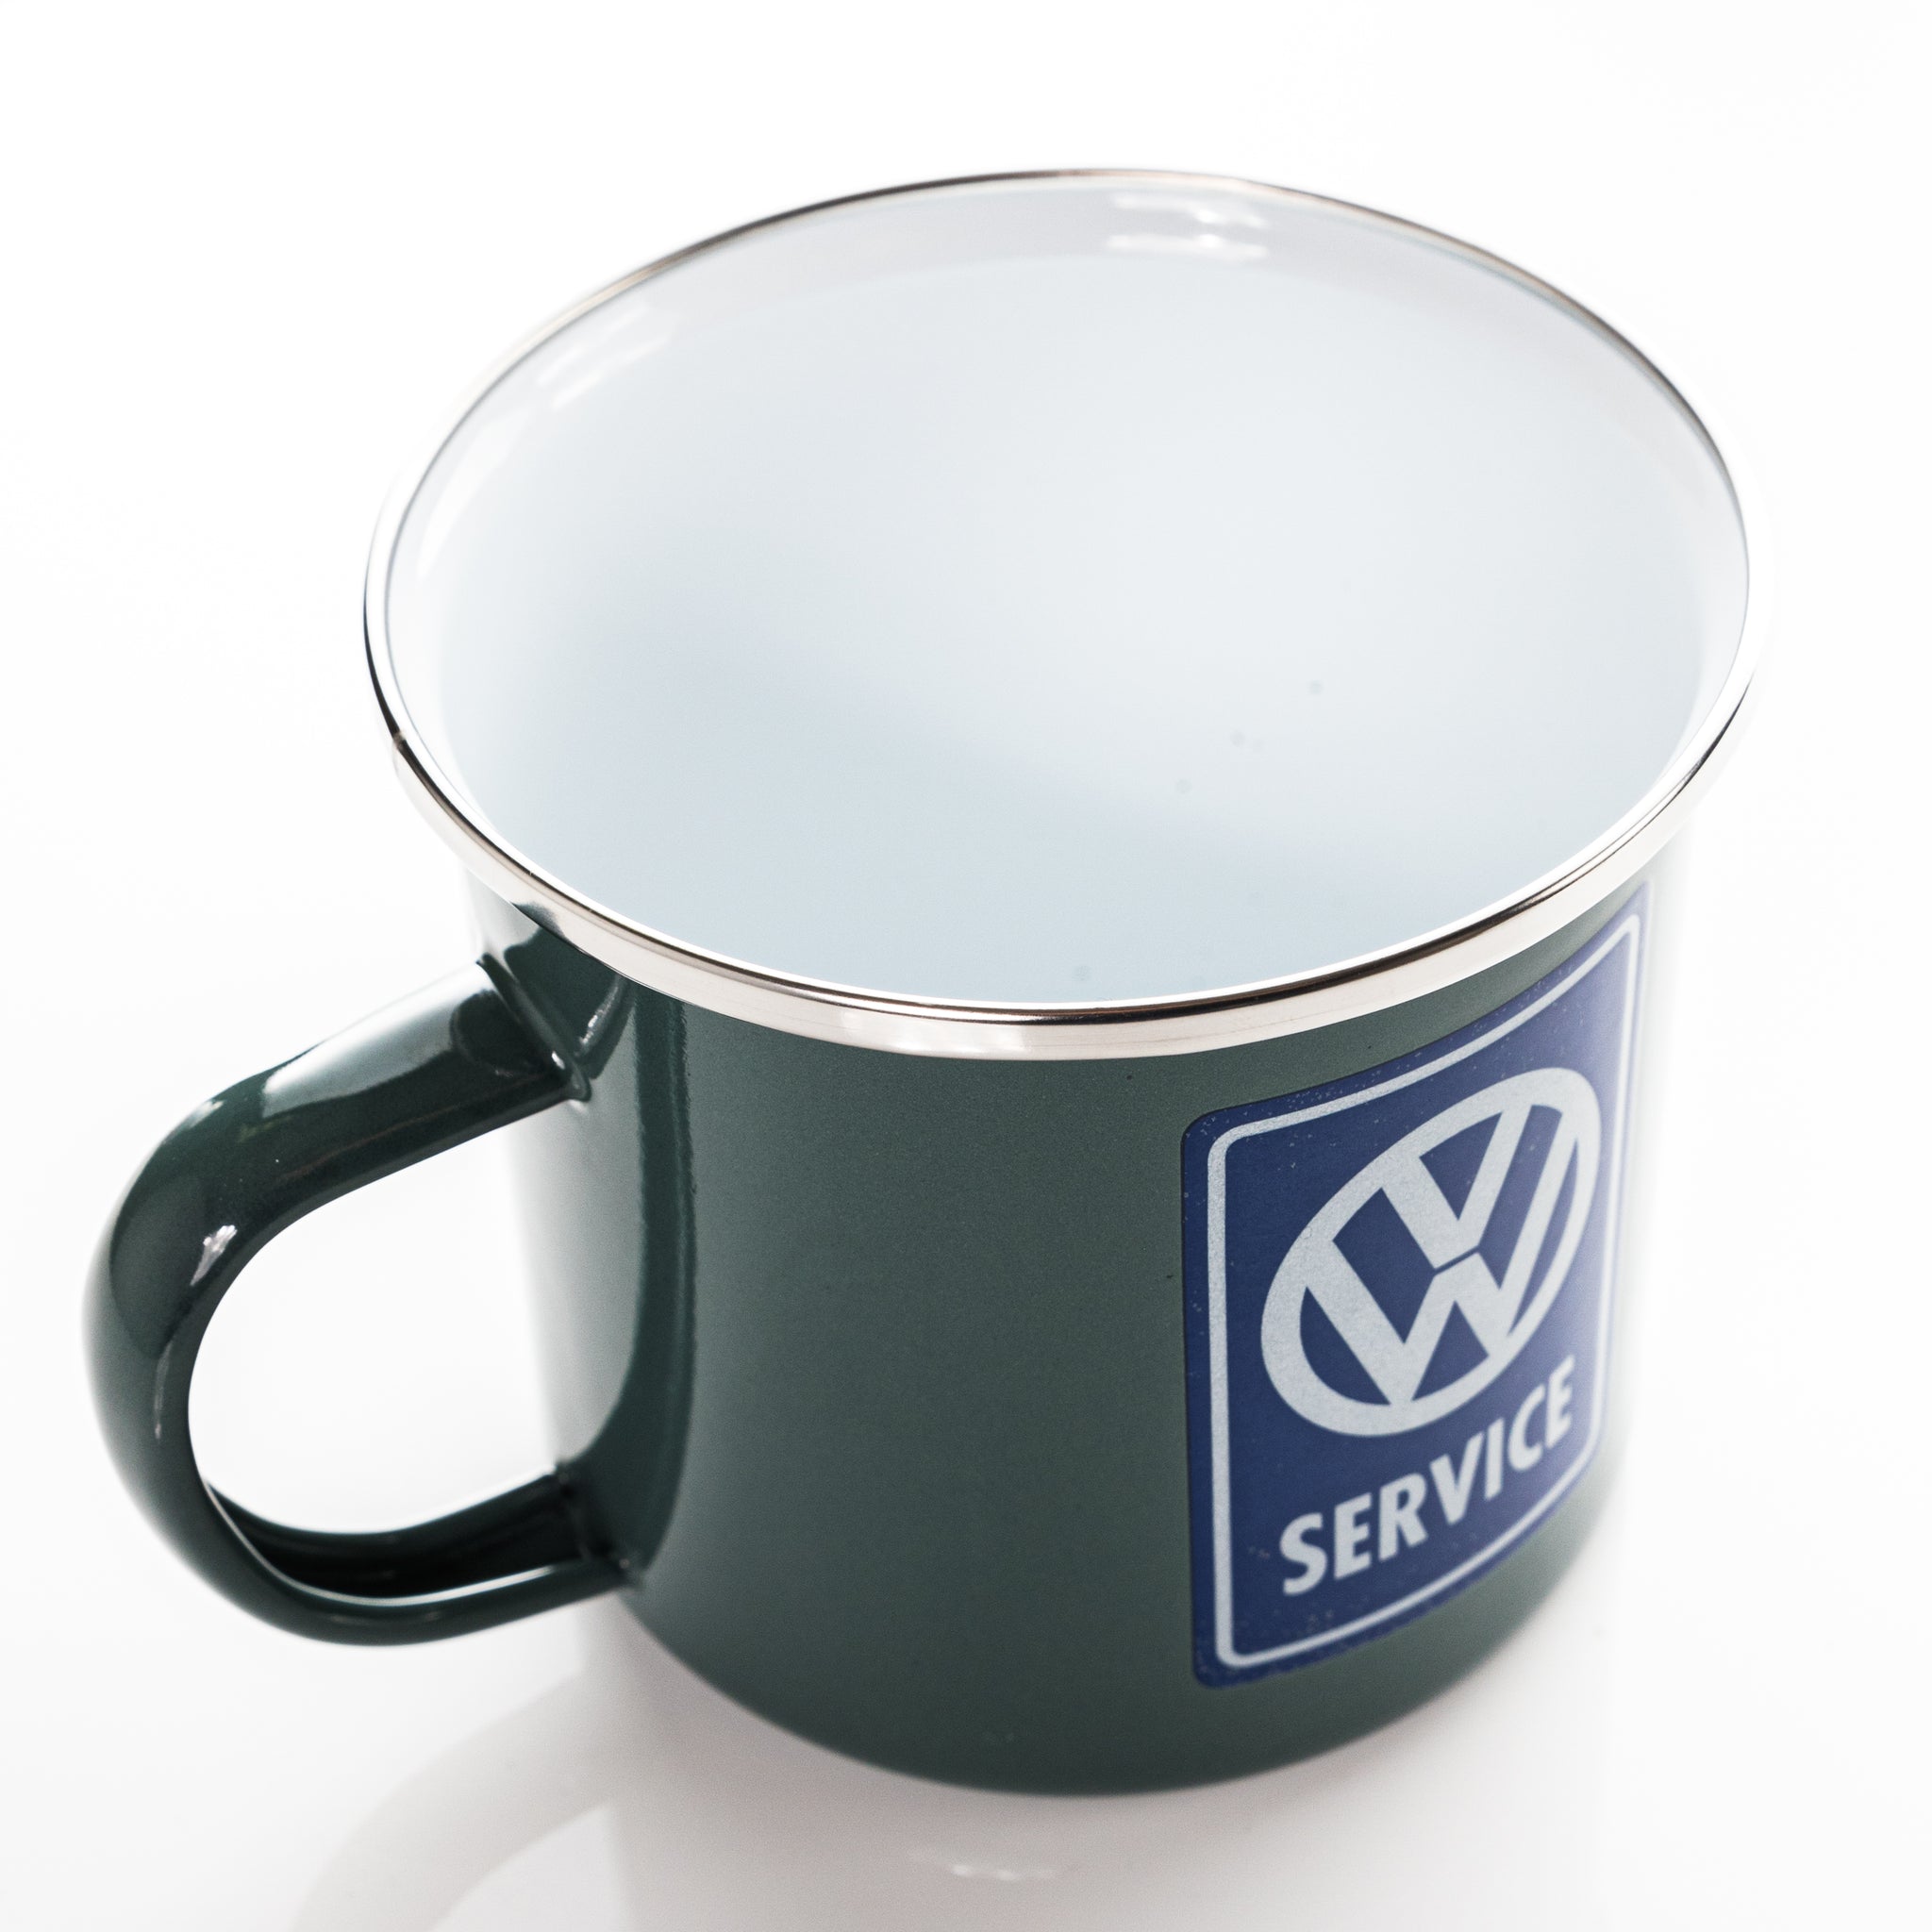 VW Collection - VW Service Enamel Mug 500ml - by BRISA -VW Service